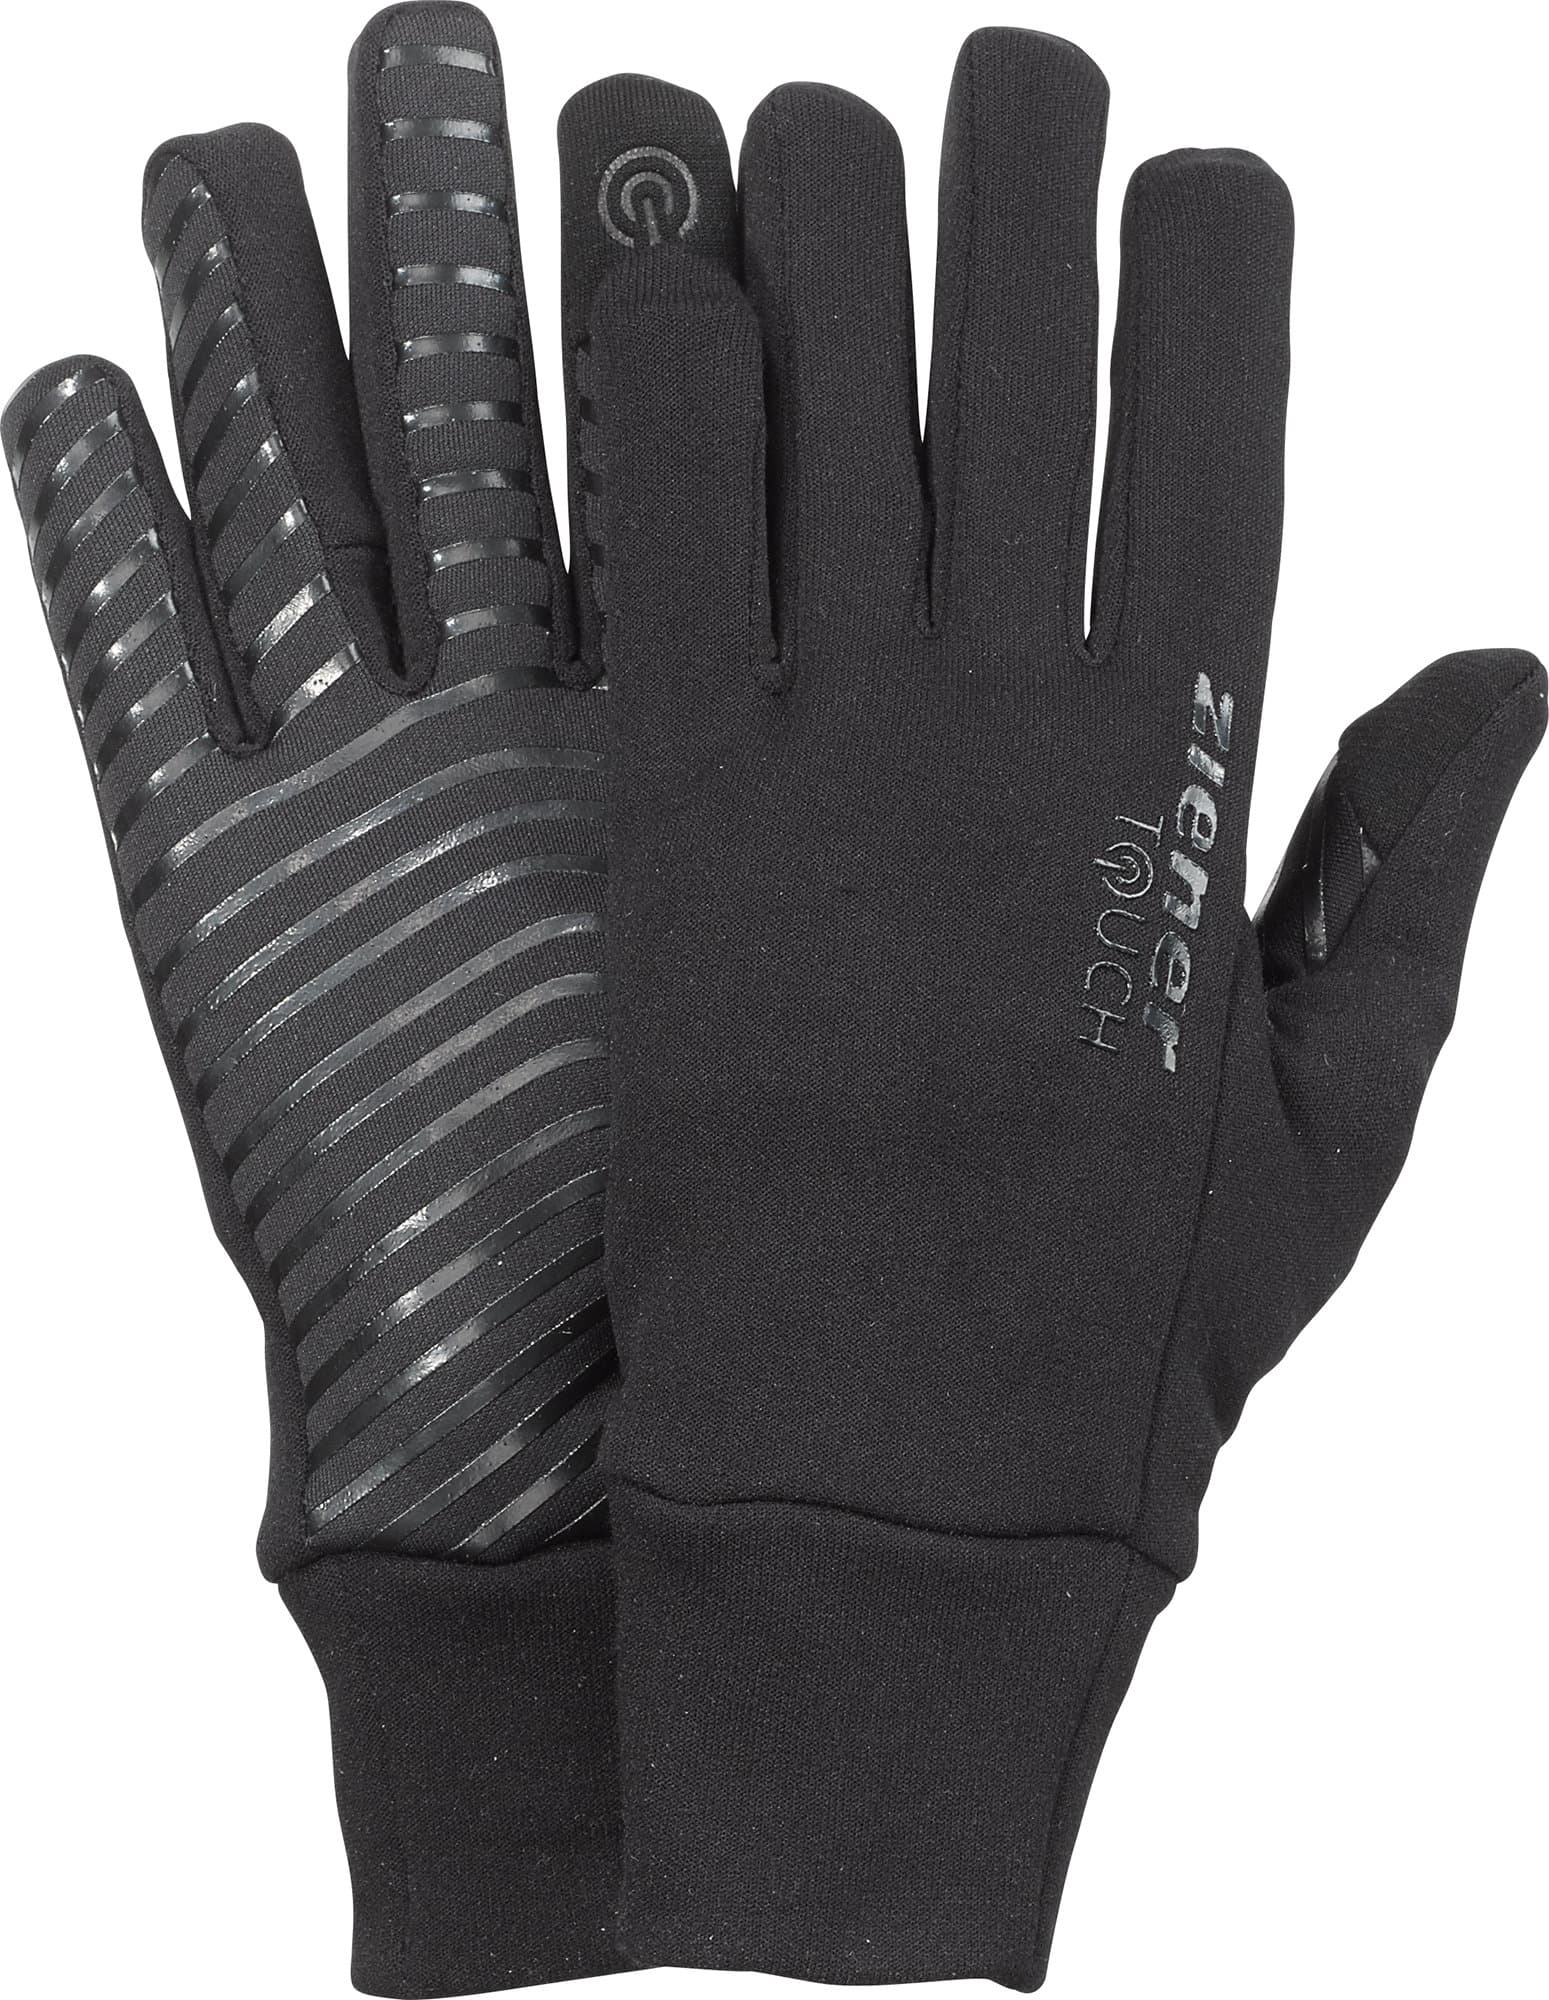 Multisport-Handschuhe | Ziener Multisport-Handschuhe Migipedia Migros